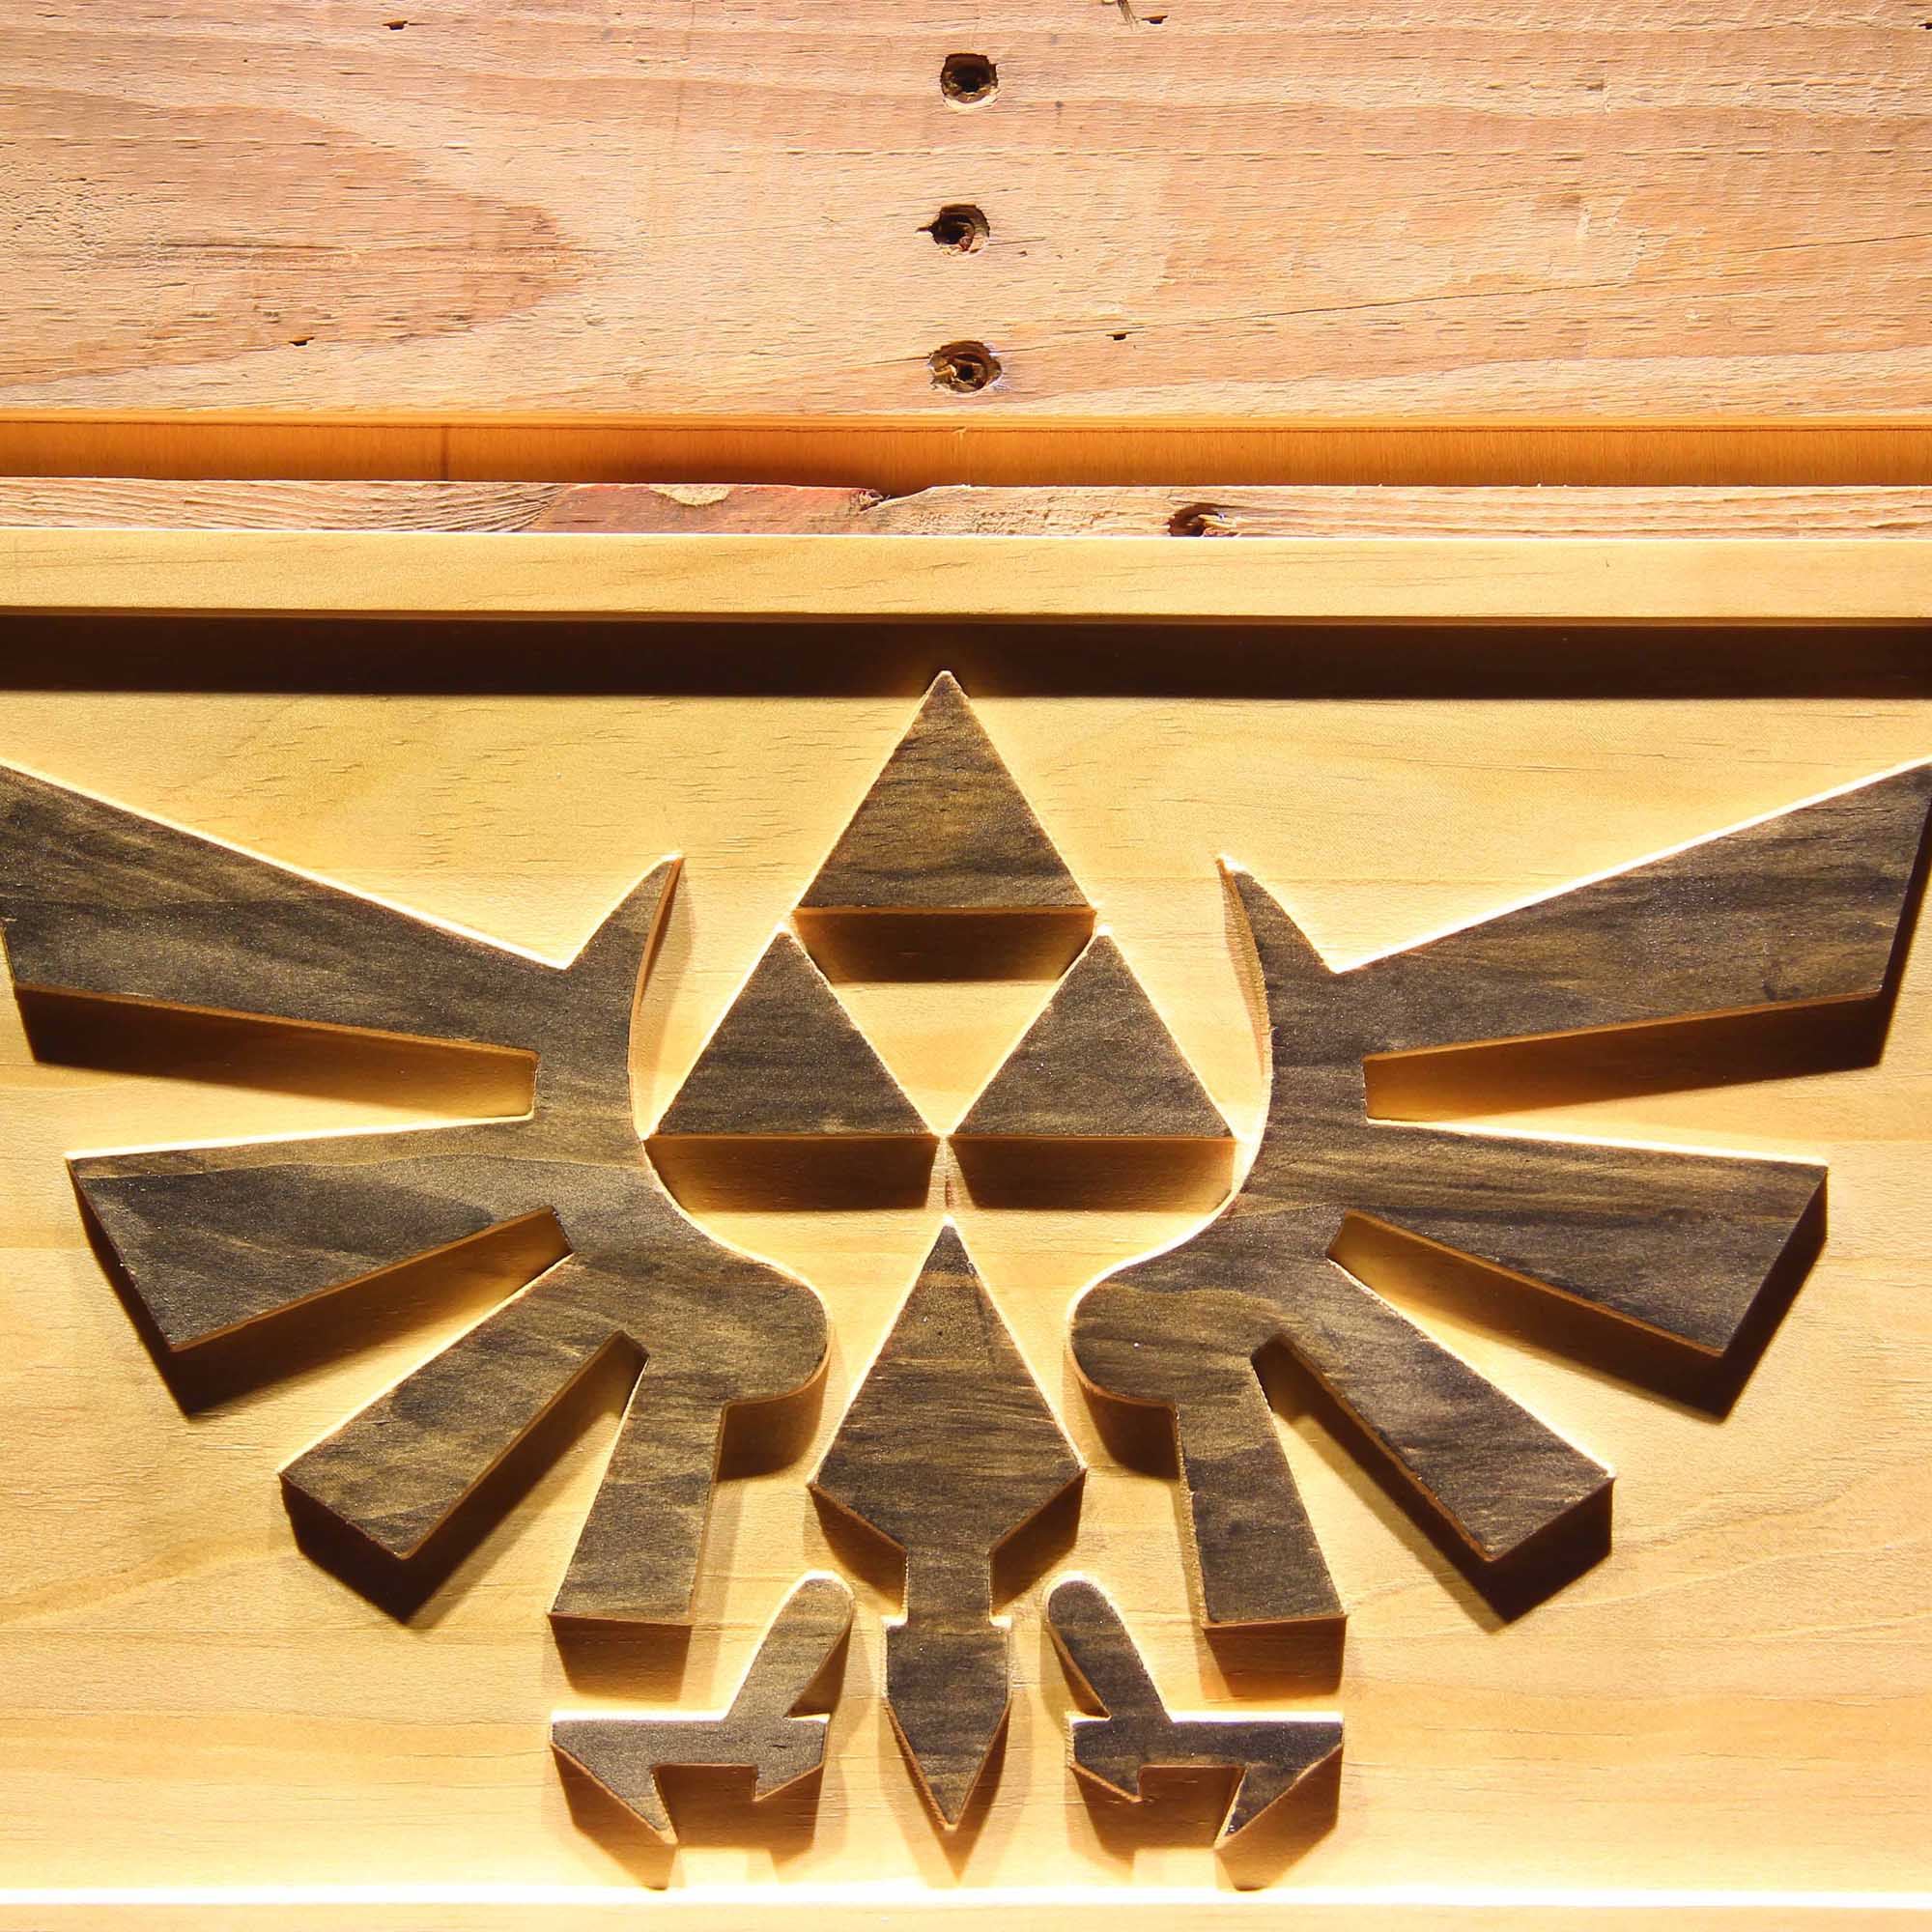 The Legend of Zelda Triforce Game 3D Wooden Engrave Sign